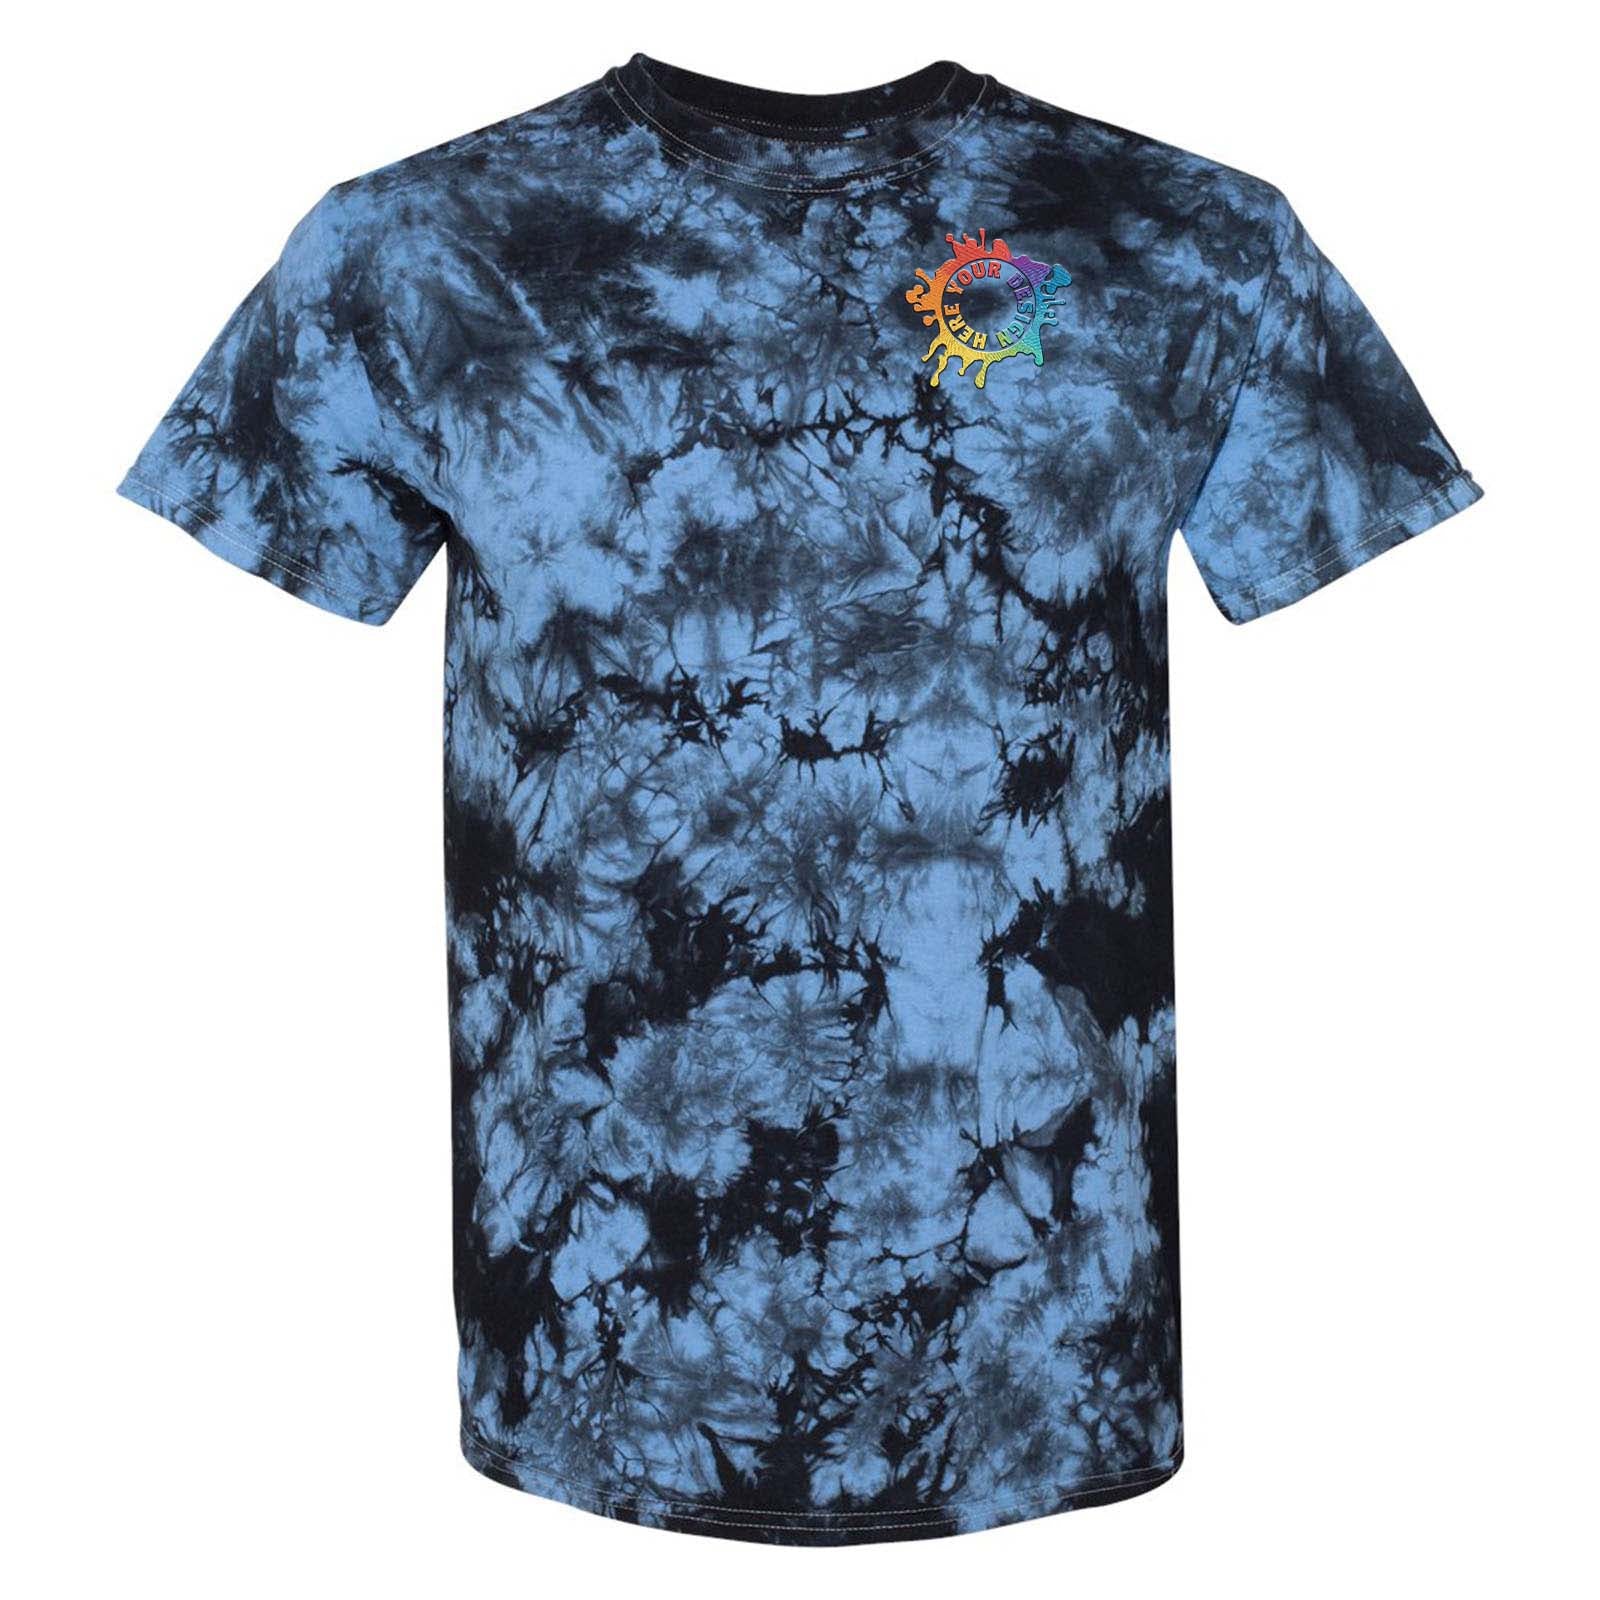 Tie-Dye Crystal Wash T-Shirt